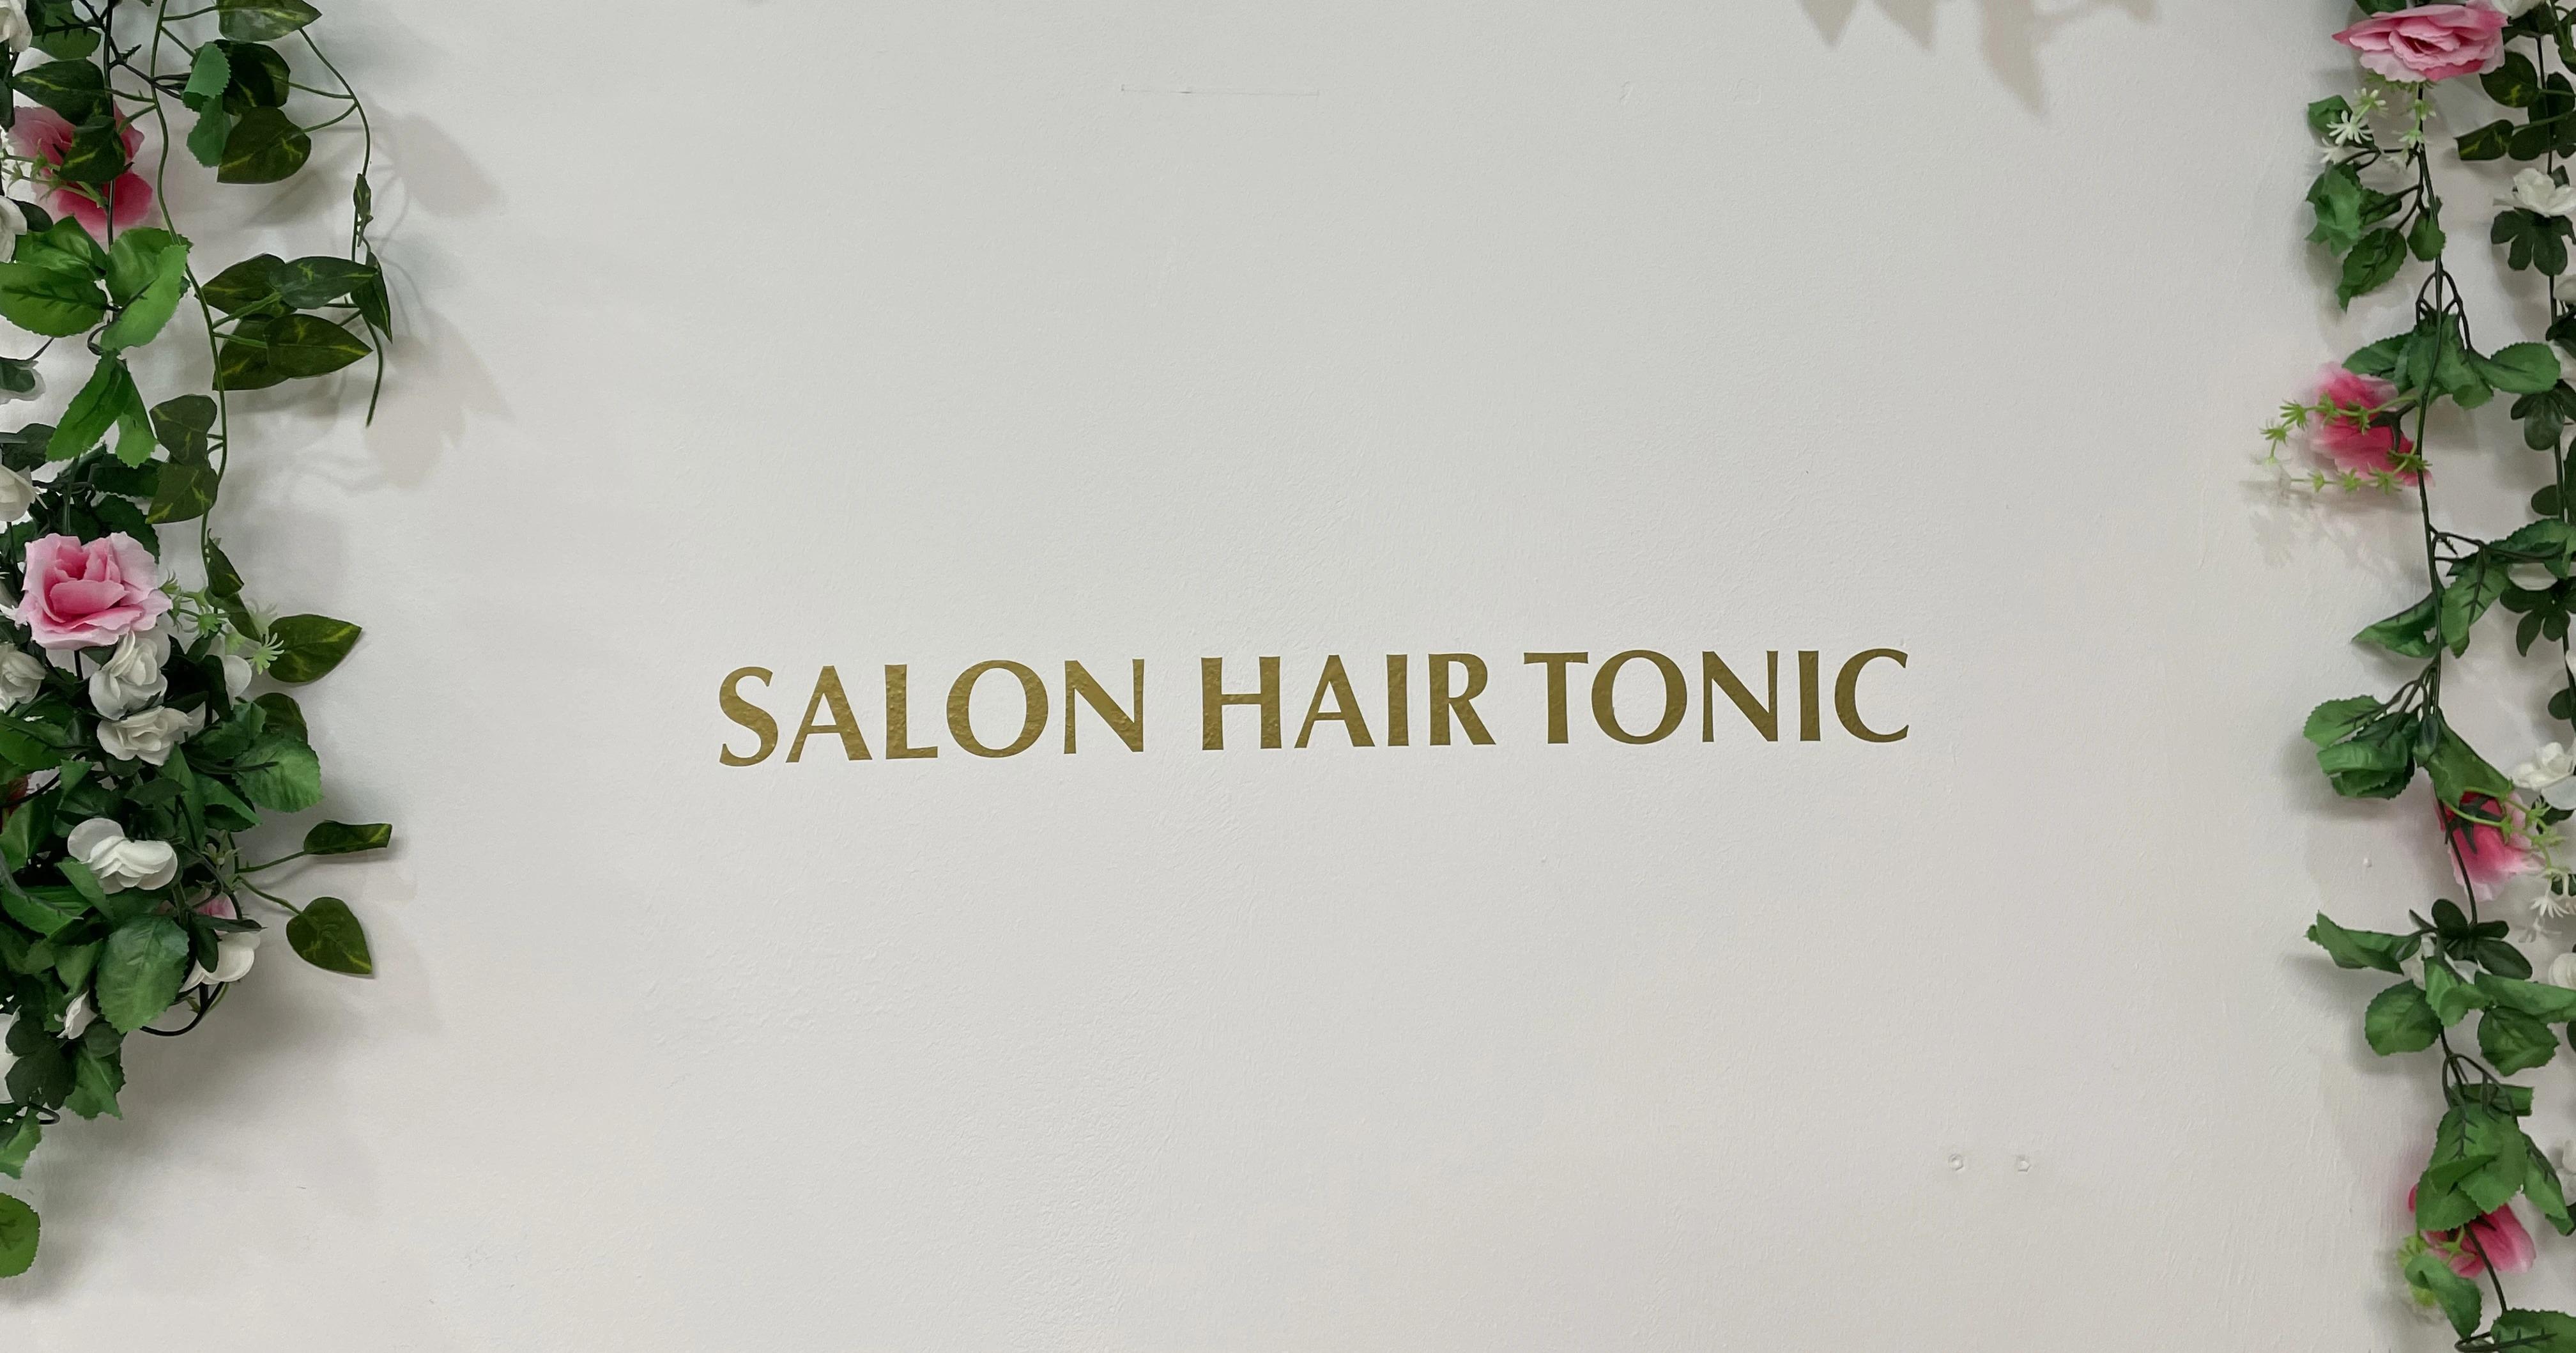 Hair Tonic | Friseursalon und Kosmetik | München, Berg am Laim Str. 50 in München